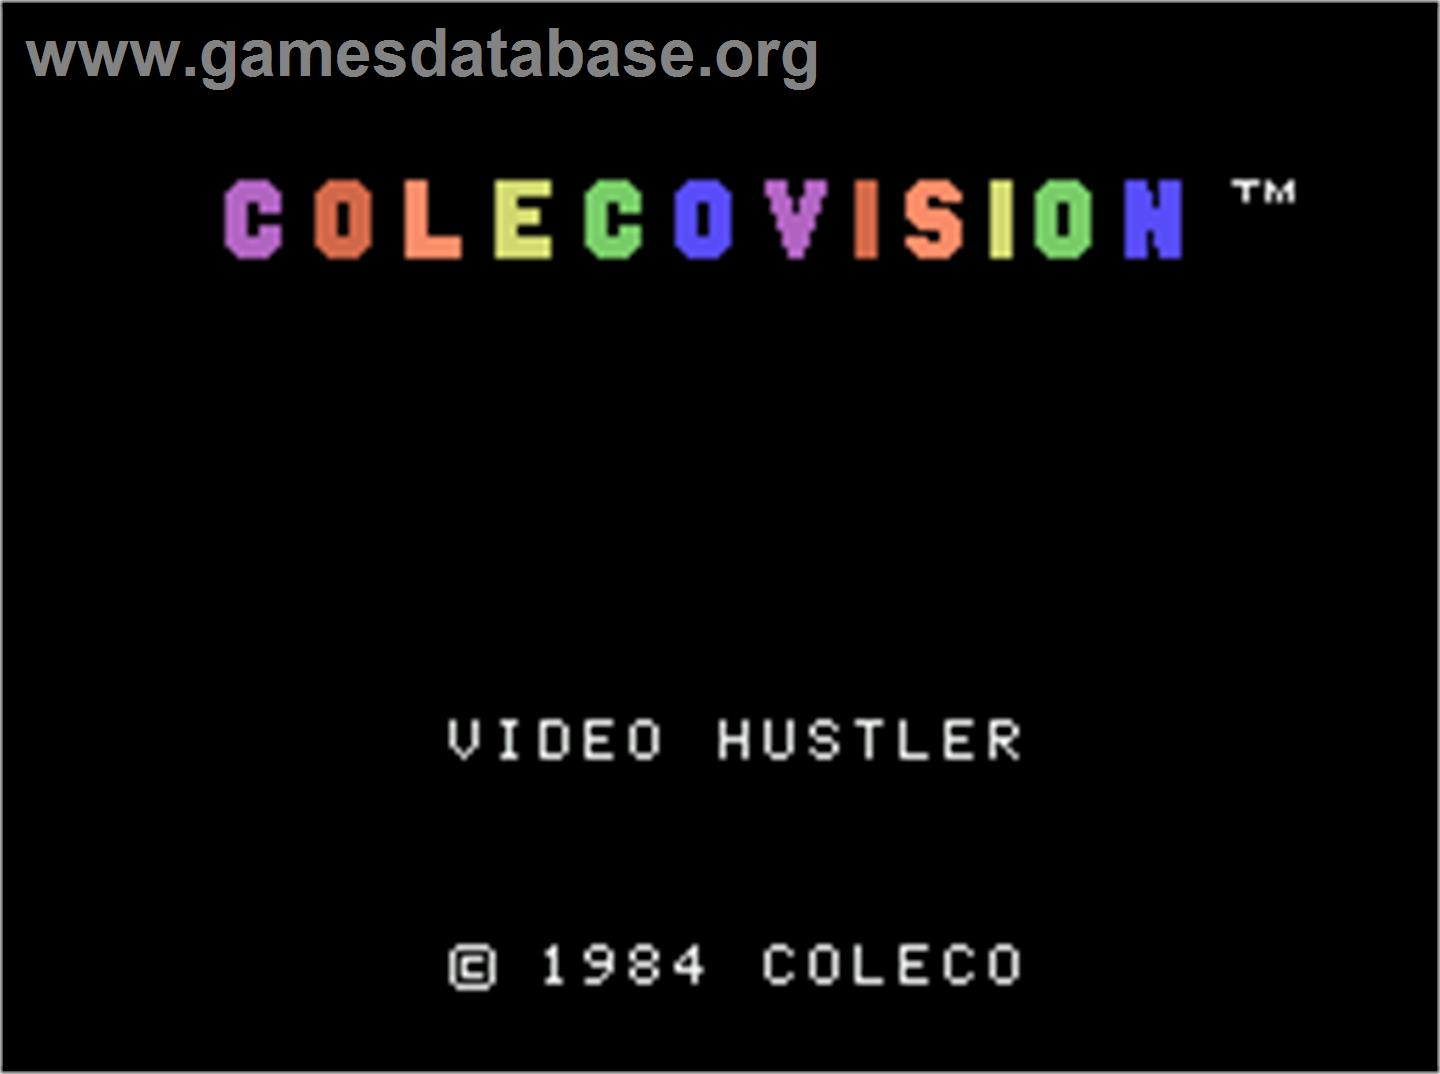 Video Hustler - Coleco Vision - Artwork - Title Screen